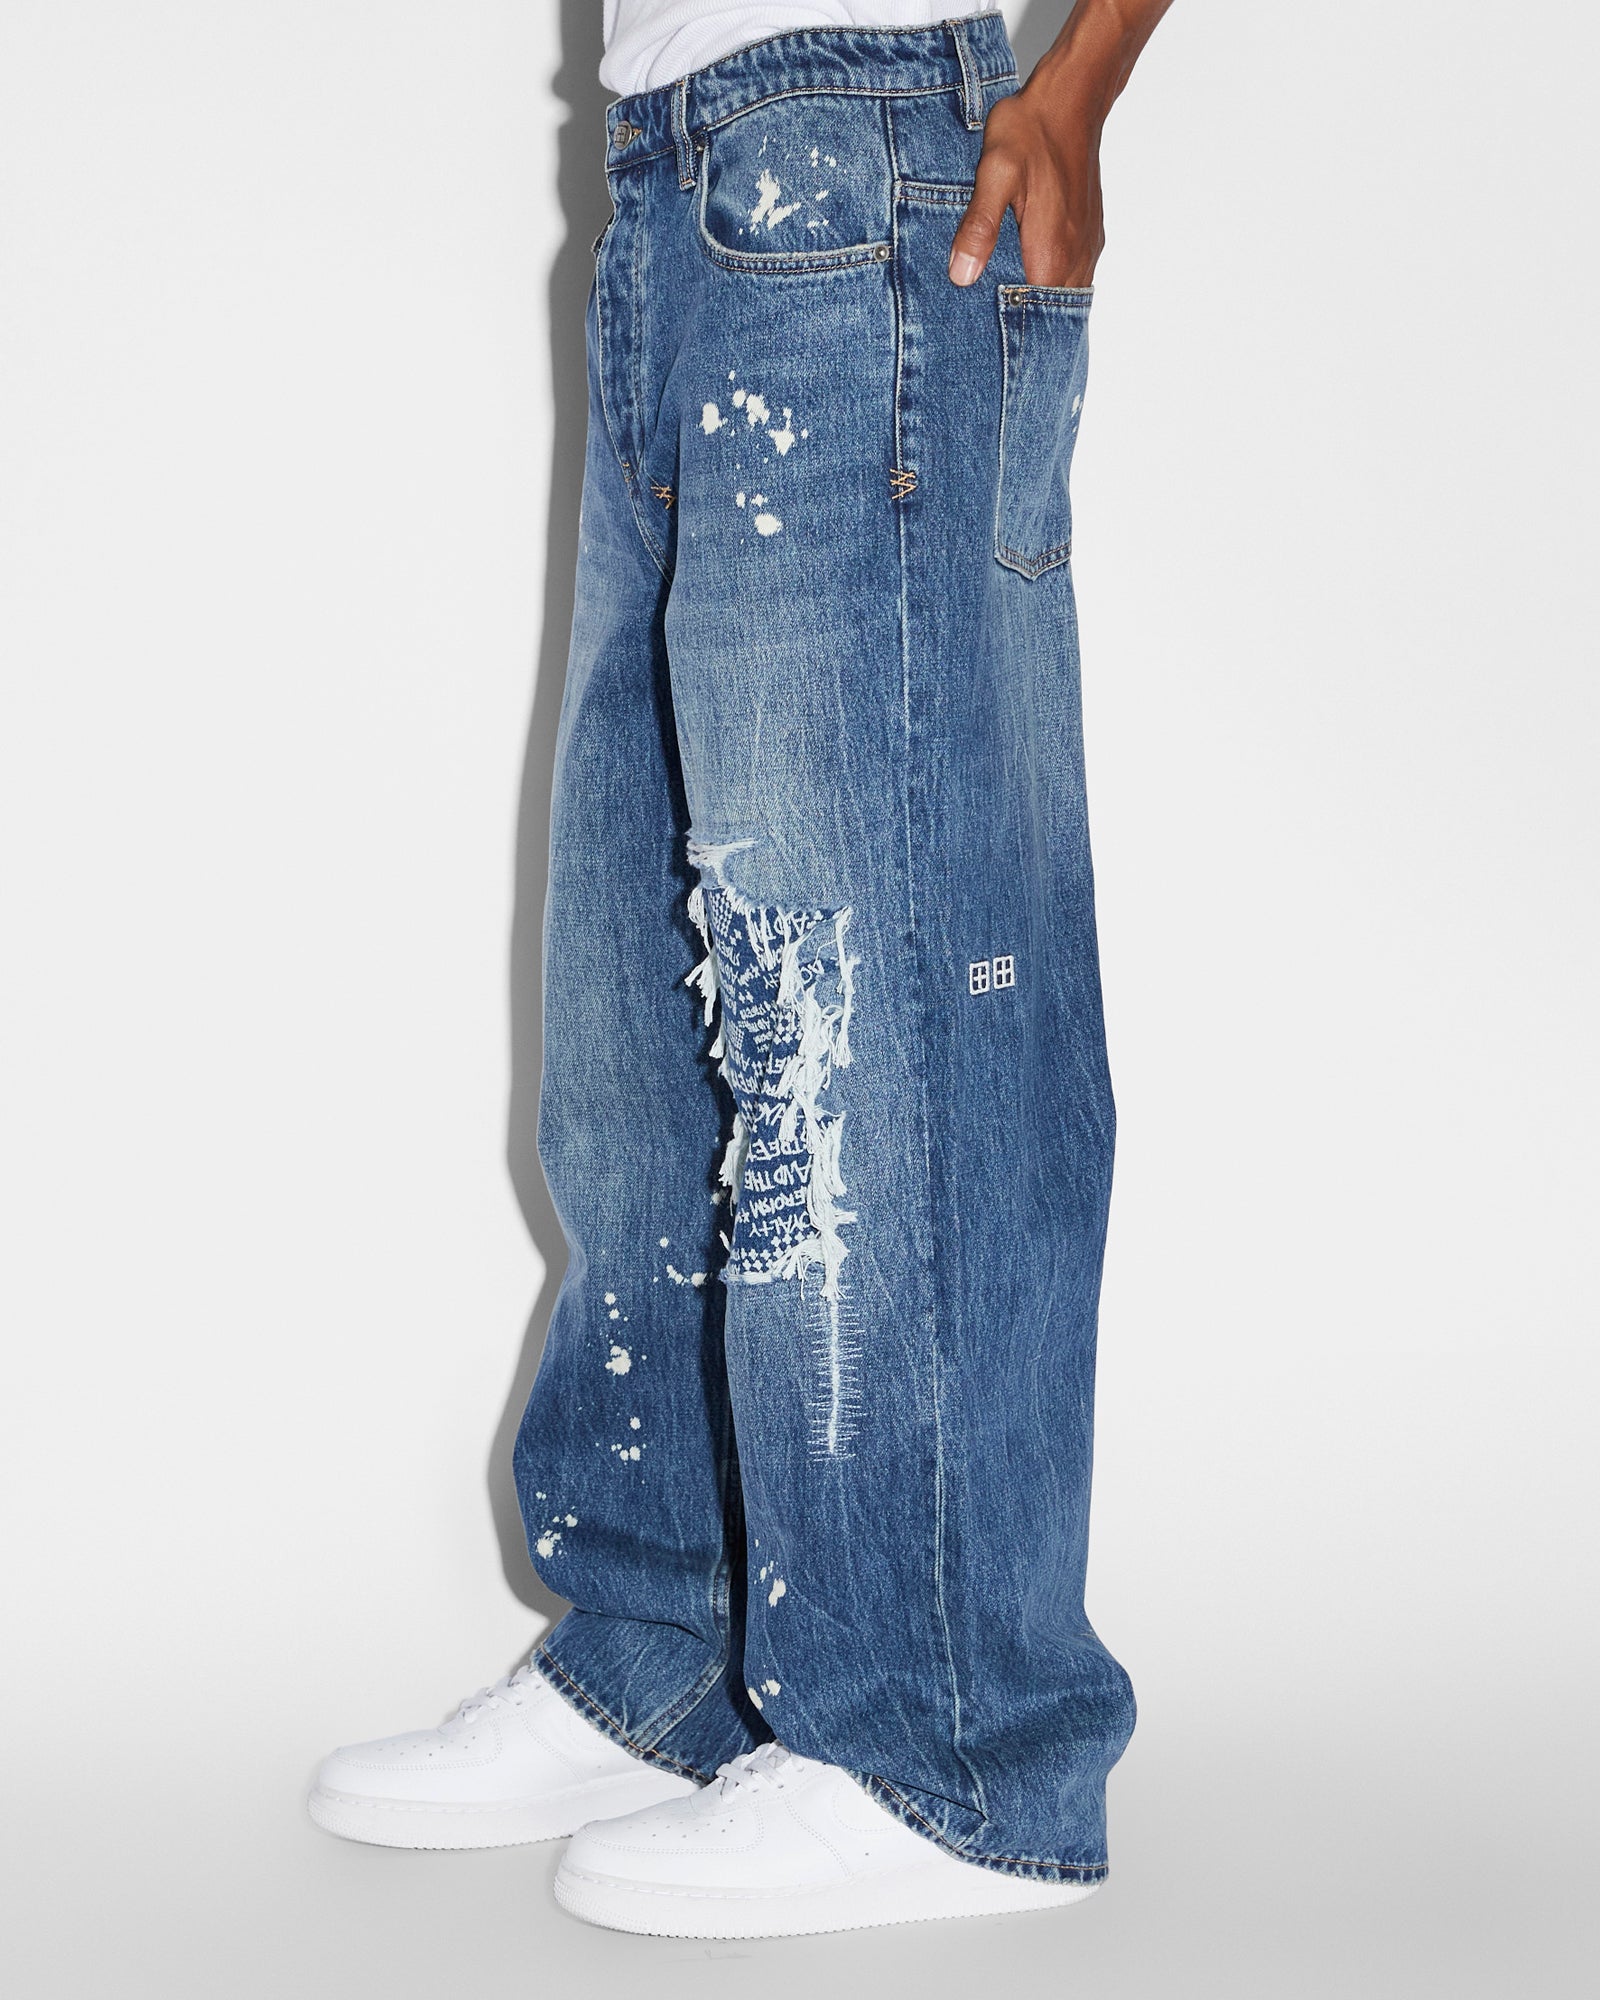 Maxx Kulture Trashed Mens Wide Leg Jeans - Dark Blue Denim | Ksubi